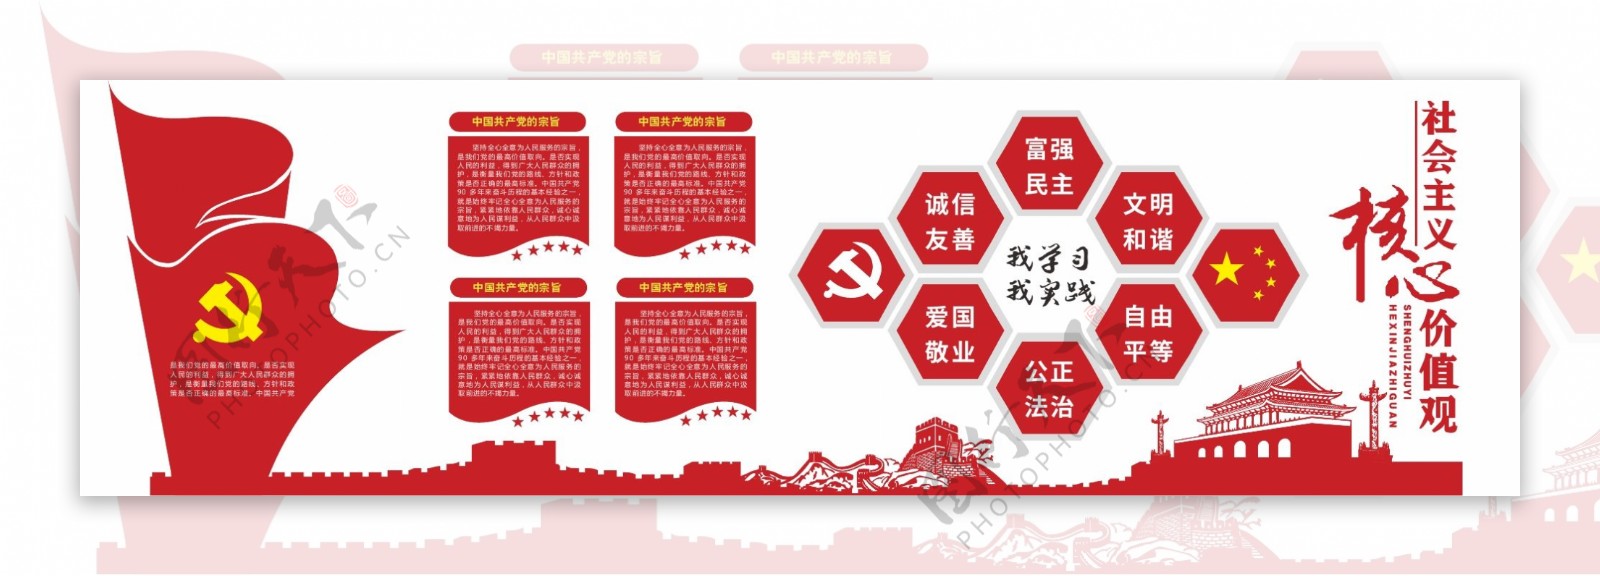 大气红色党建文化立体墙展示